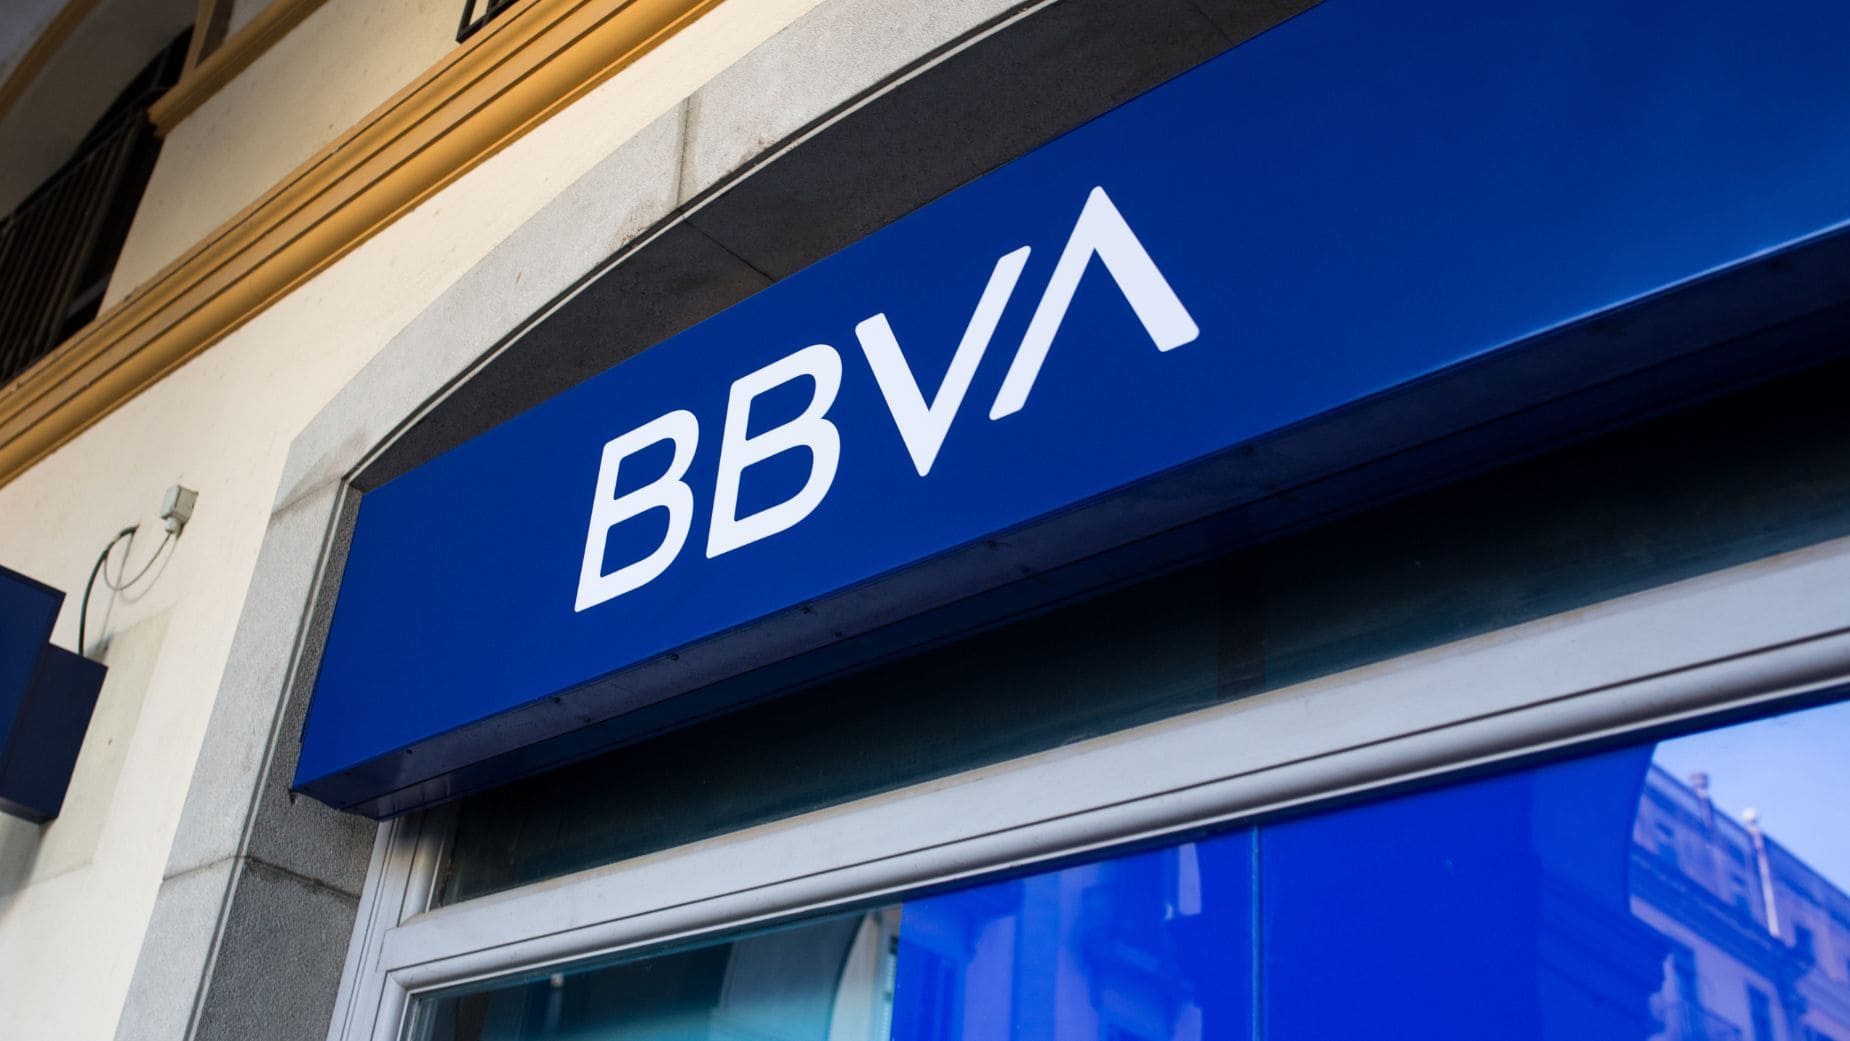 BBVA ofrece 720 euros a nuevos clientes